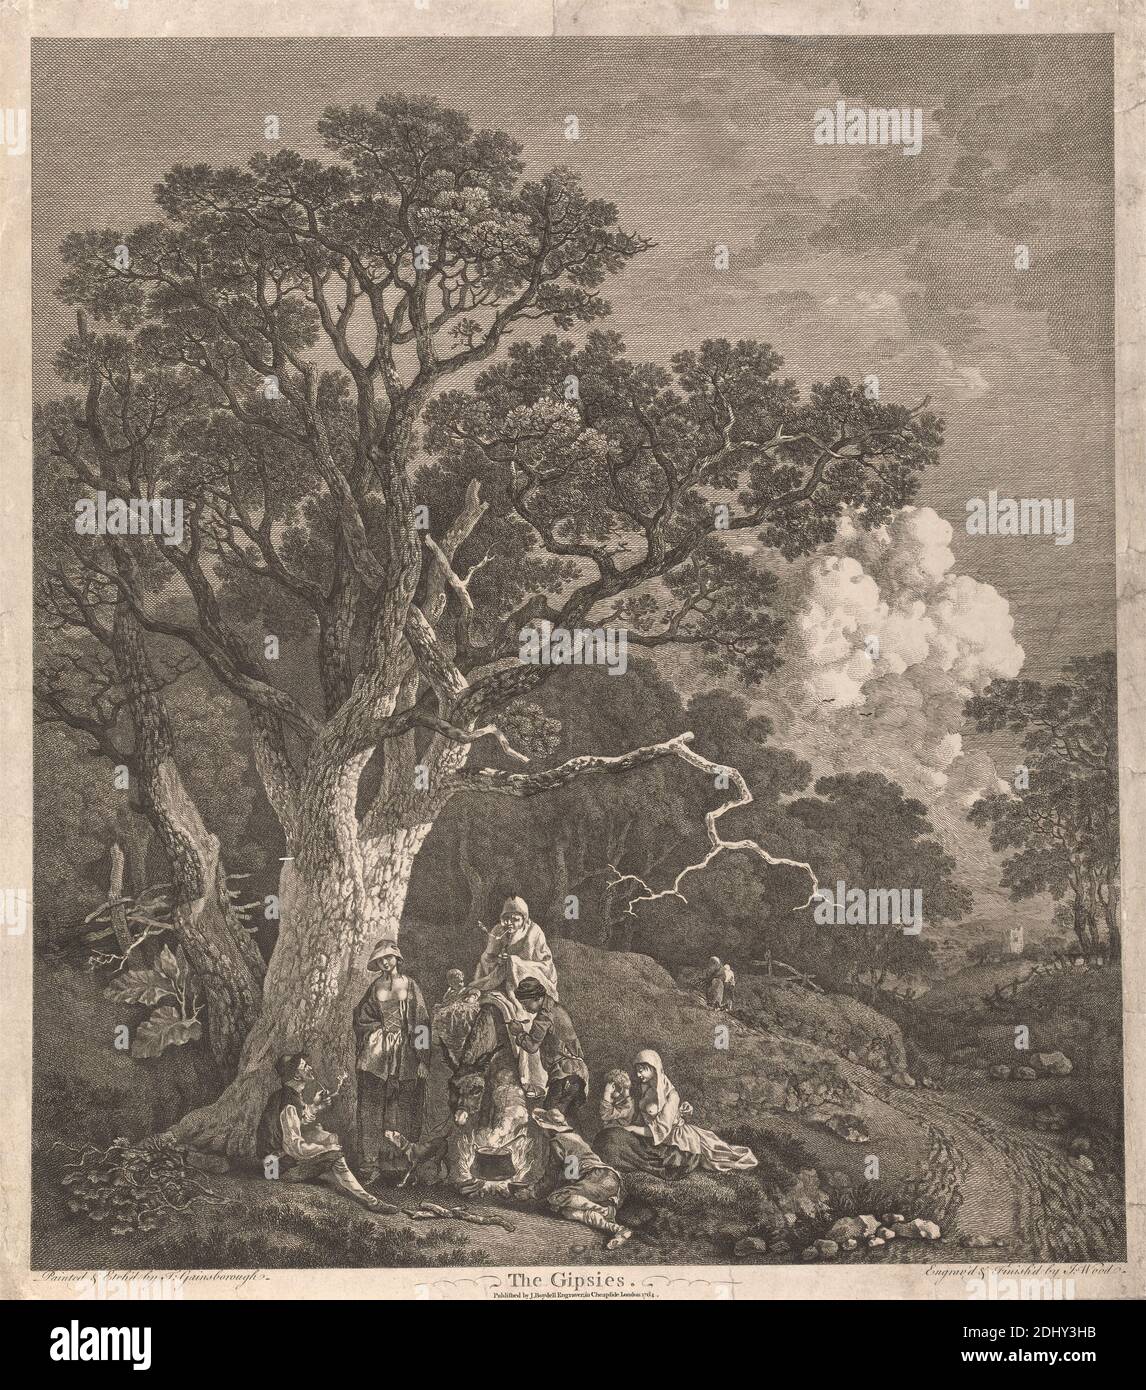 Los gitanos (paisaje boscoso con los gitanos alrededor de un fuego de campo), John Wood, 1728–1781, británico, después de Thomas Gainsborough RA, 1727–1788, británico, 1764, grabado y grabado, hoja: 18 5/8 x 16 9/16pulg. (47.3 x 42,1cm), perro (animal), valla, fuego, género, gitanos, árboles, bosques Foto de stock